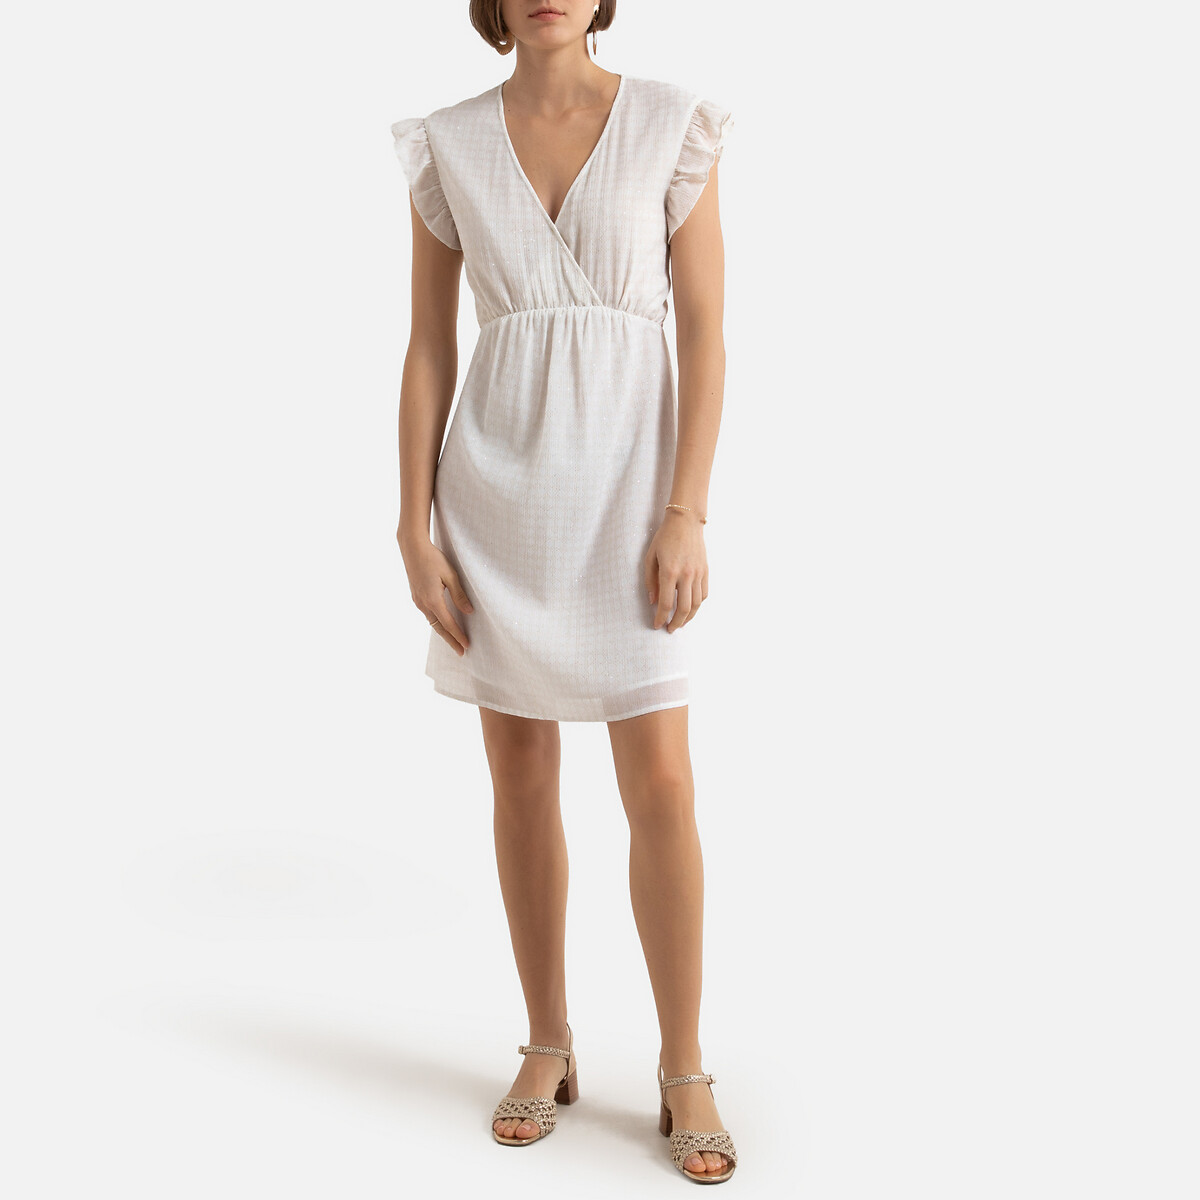 Платье LaRedoute Короткое V-образный вырез короткие рукава 0(XS) белый, размер 0(XS) Короткое V-образный вырез короткие рукава 0(XS) белый - фото 2